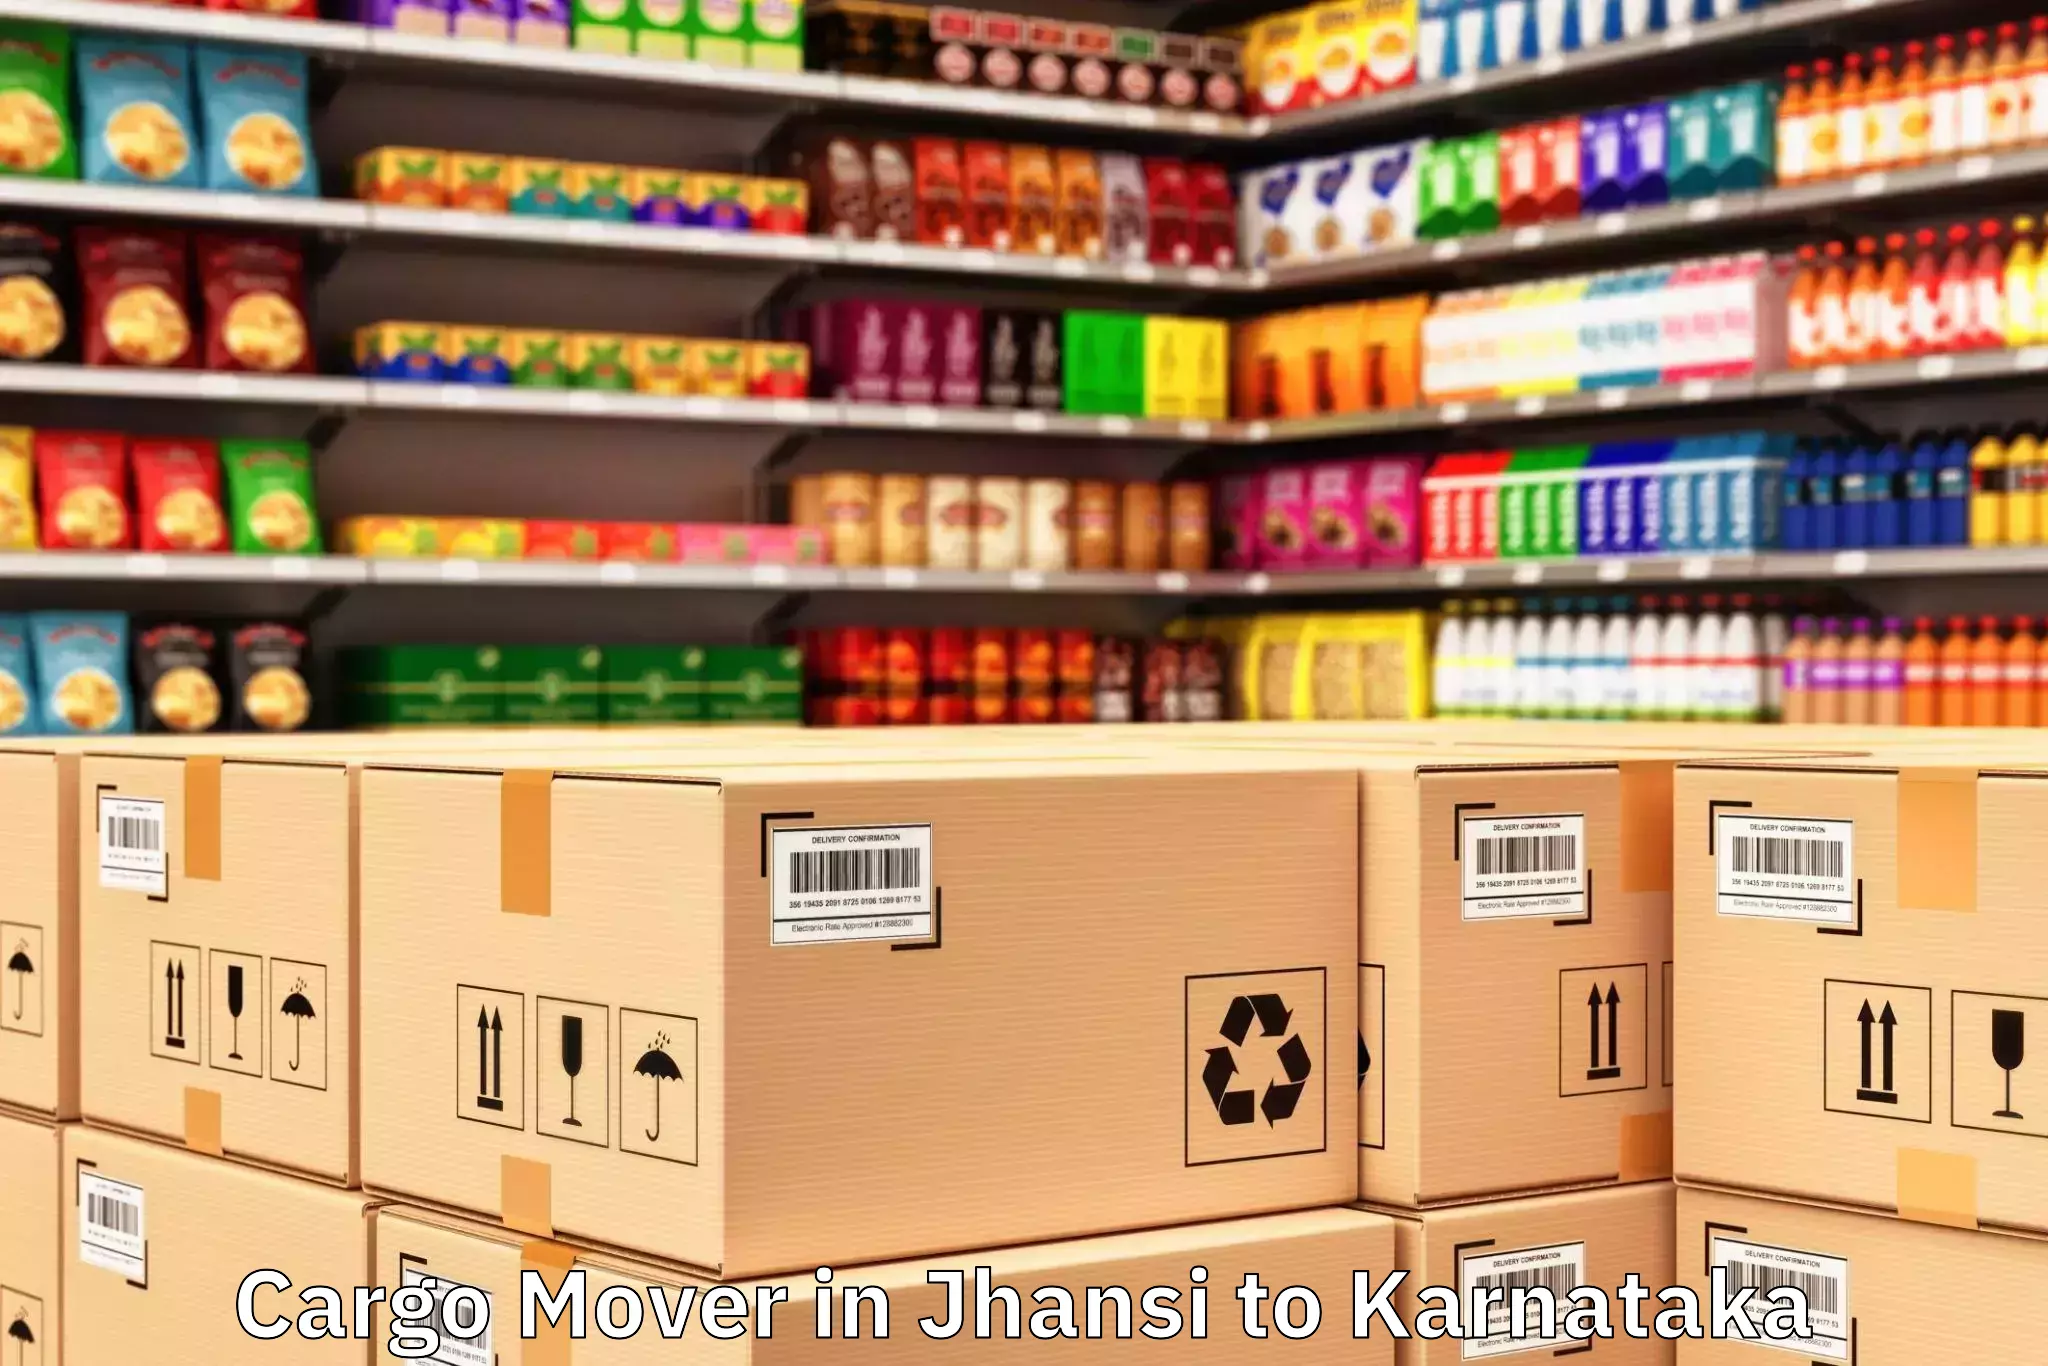 Jhansi to Karnataka Cargo Mover Booking